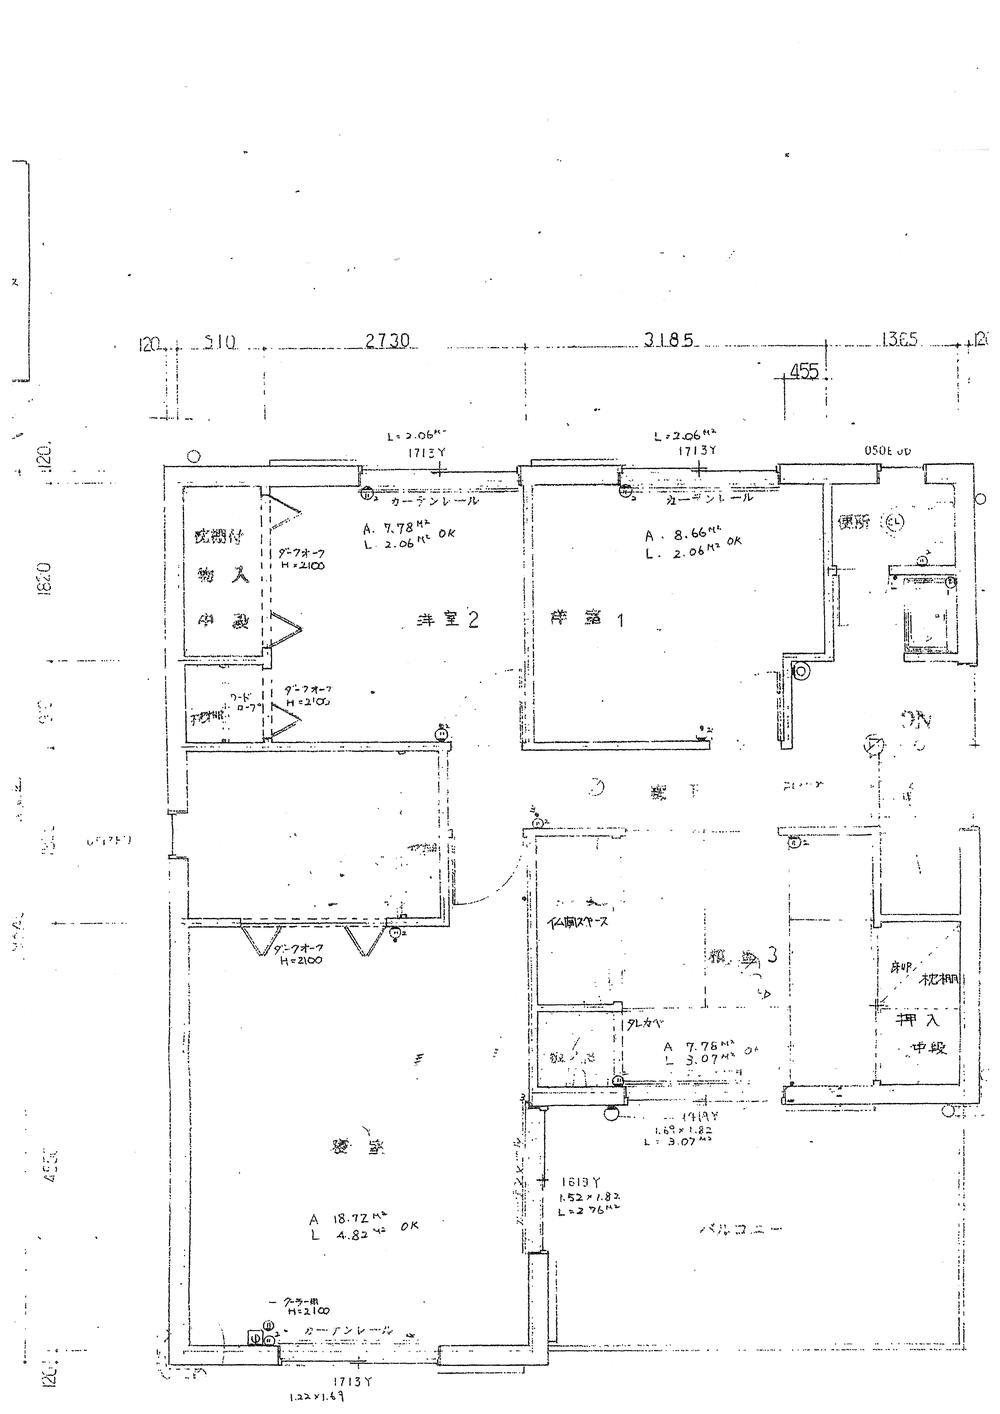 Floor plan. 11 million yen, 6LDK, Land area 168.82 sq m , Building area 152.71 sq m